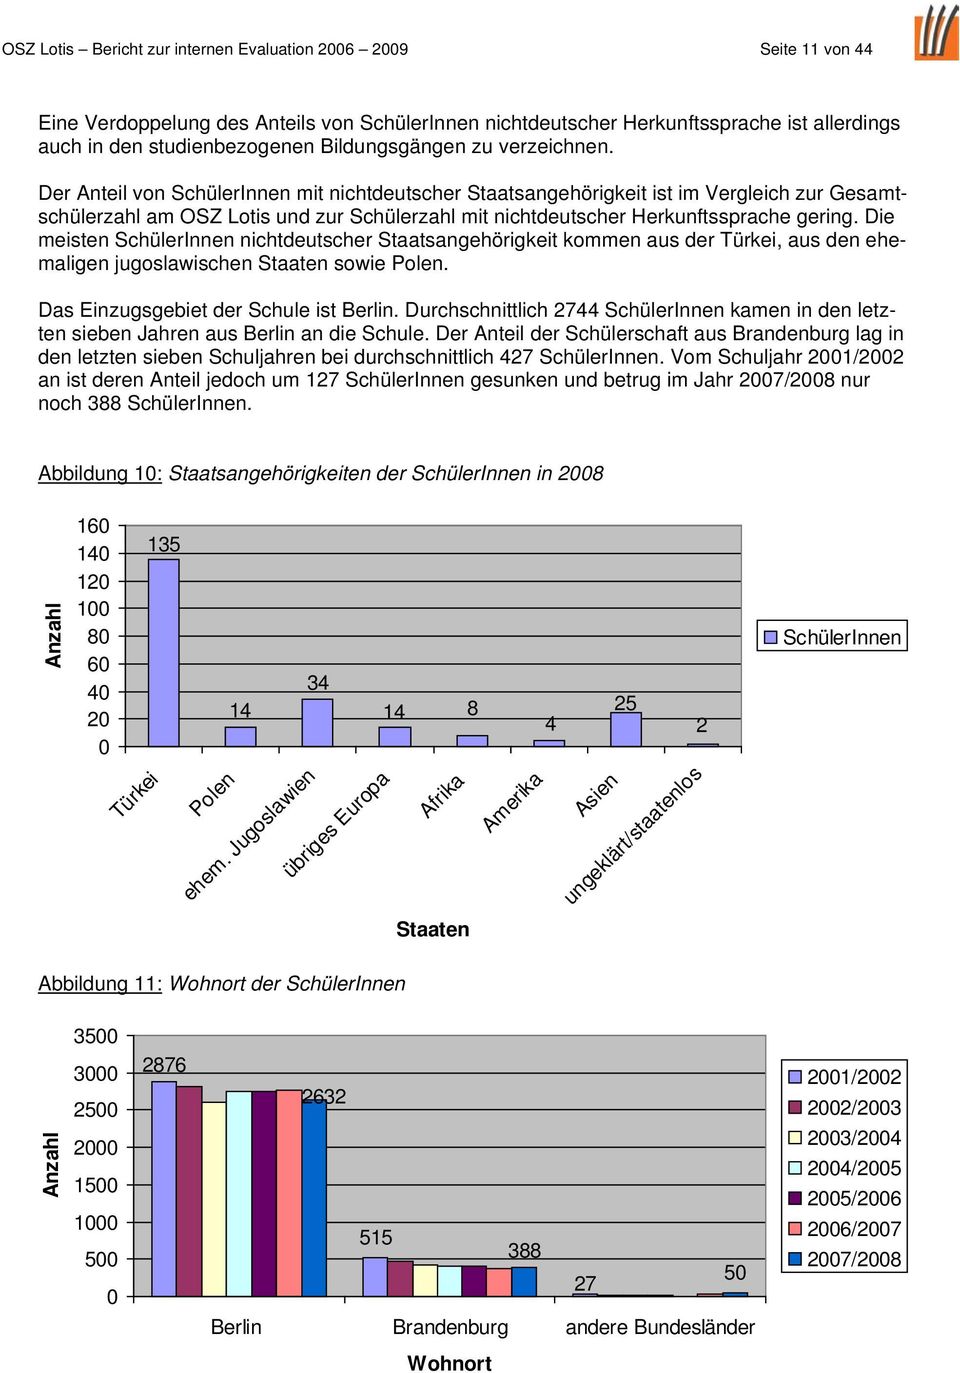 Der Anteil von SchülerInnen mit nichtdeutscher Staatsangehörigkeit ist im Vergleich zur Gesamtschülerzahl am OSZ Lotis und zur Schülerzahl mit nichtdeutscher Herkunftssprache gering.